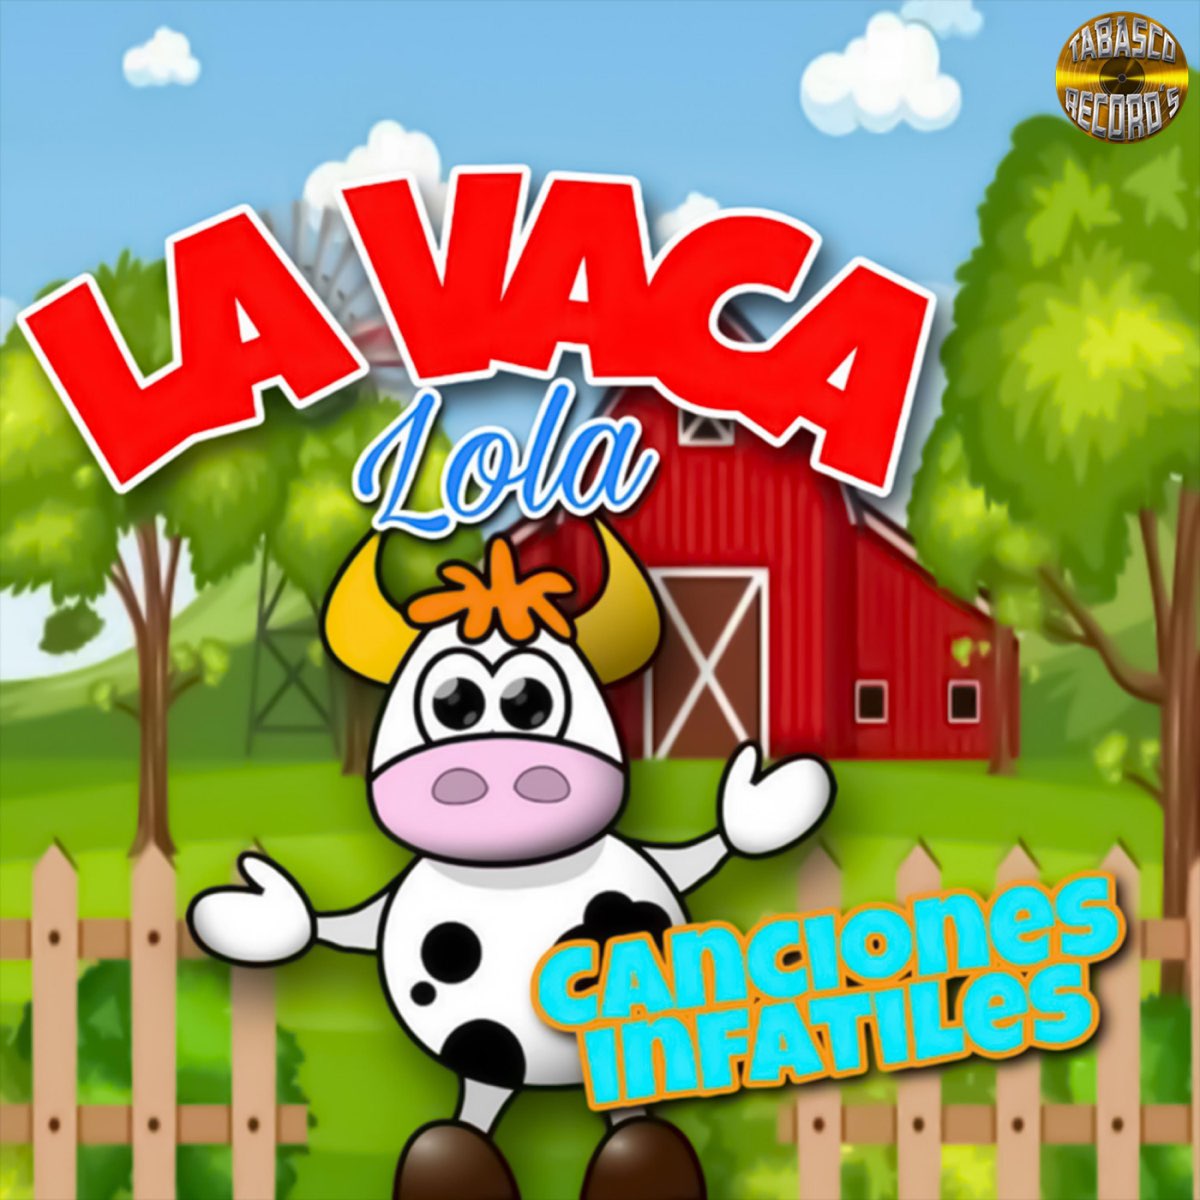 Canciones de la Vaca Lola - Album by Lunacreciente - Apple Music